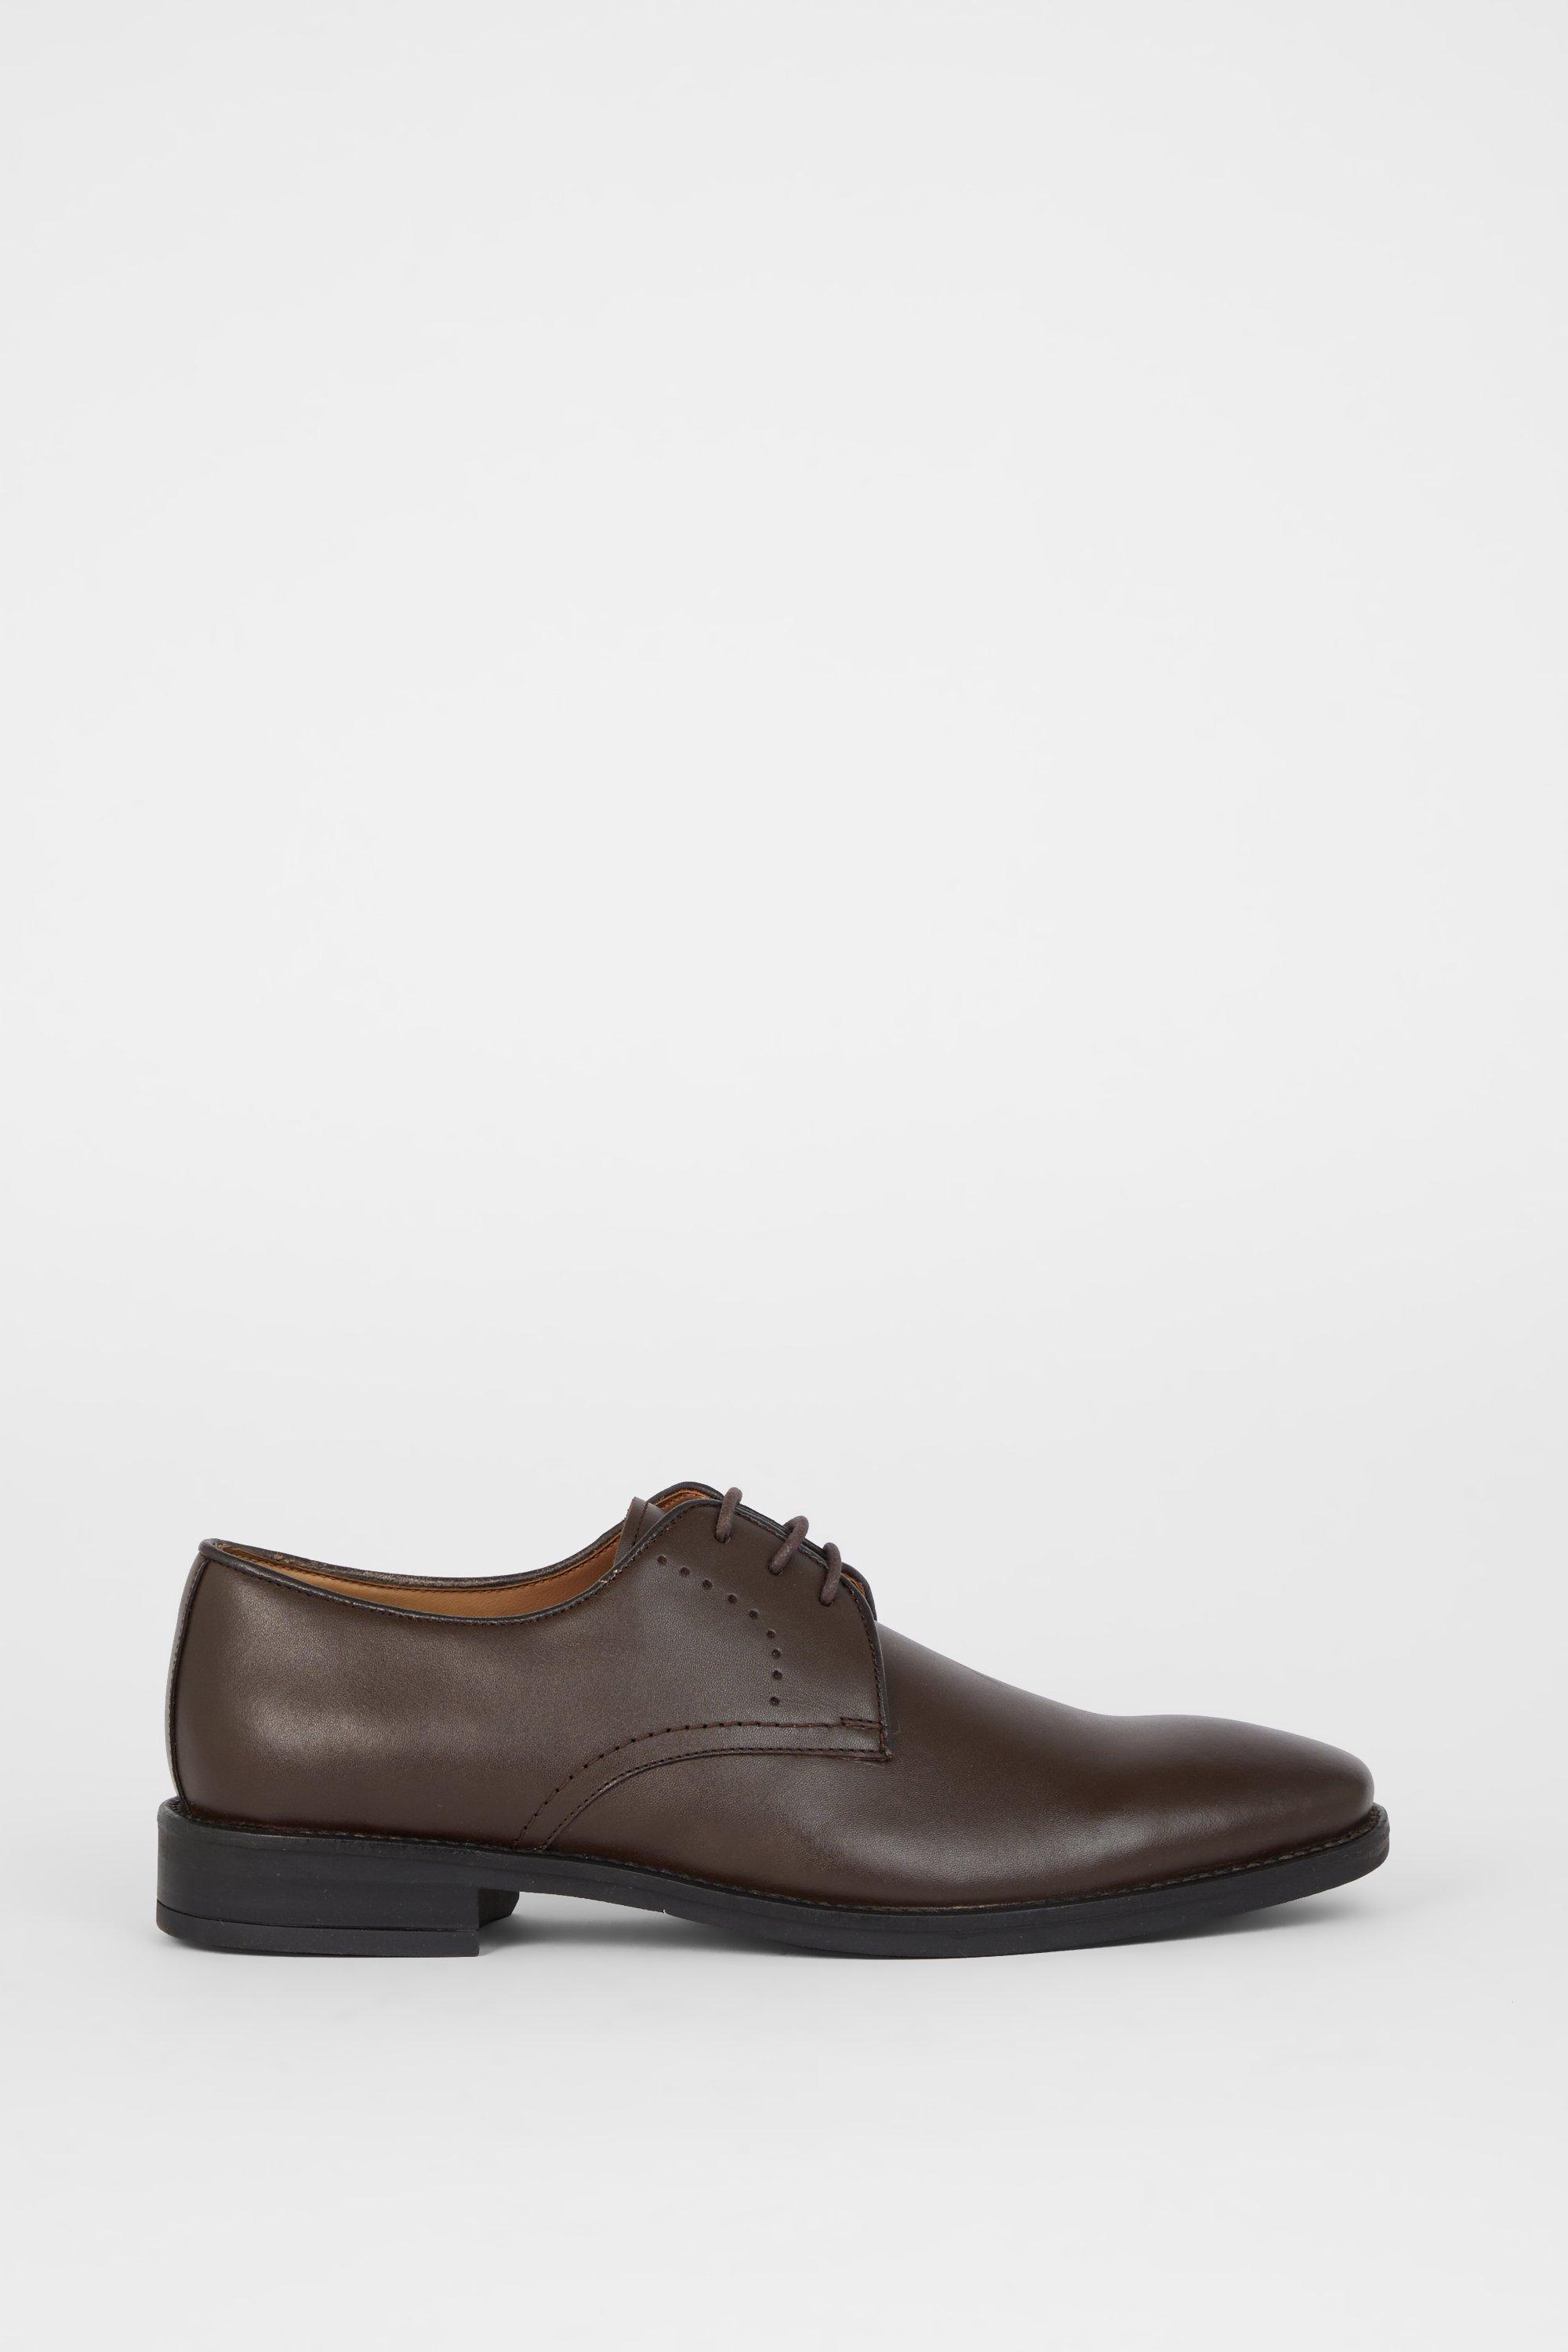 Кожаные туфли дерби Airsoft Comfort с перфорацией на шнуровке Debenhams, коричневый туфли дерби tod s formal черный